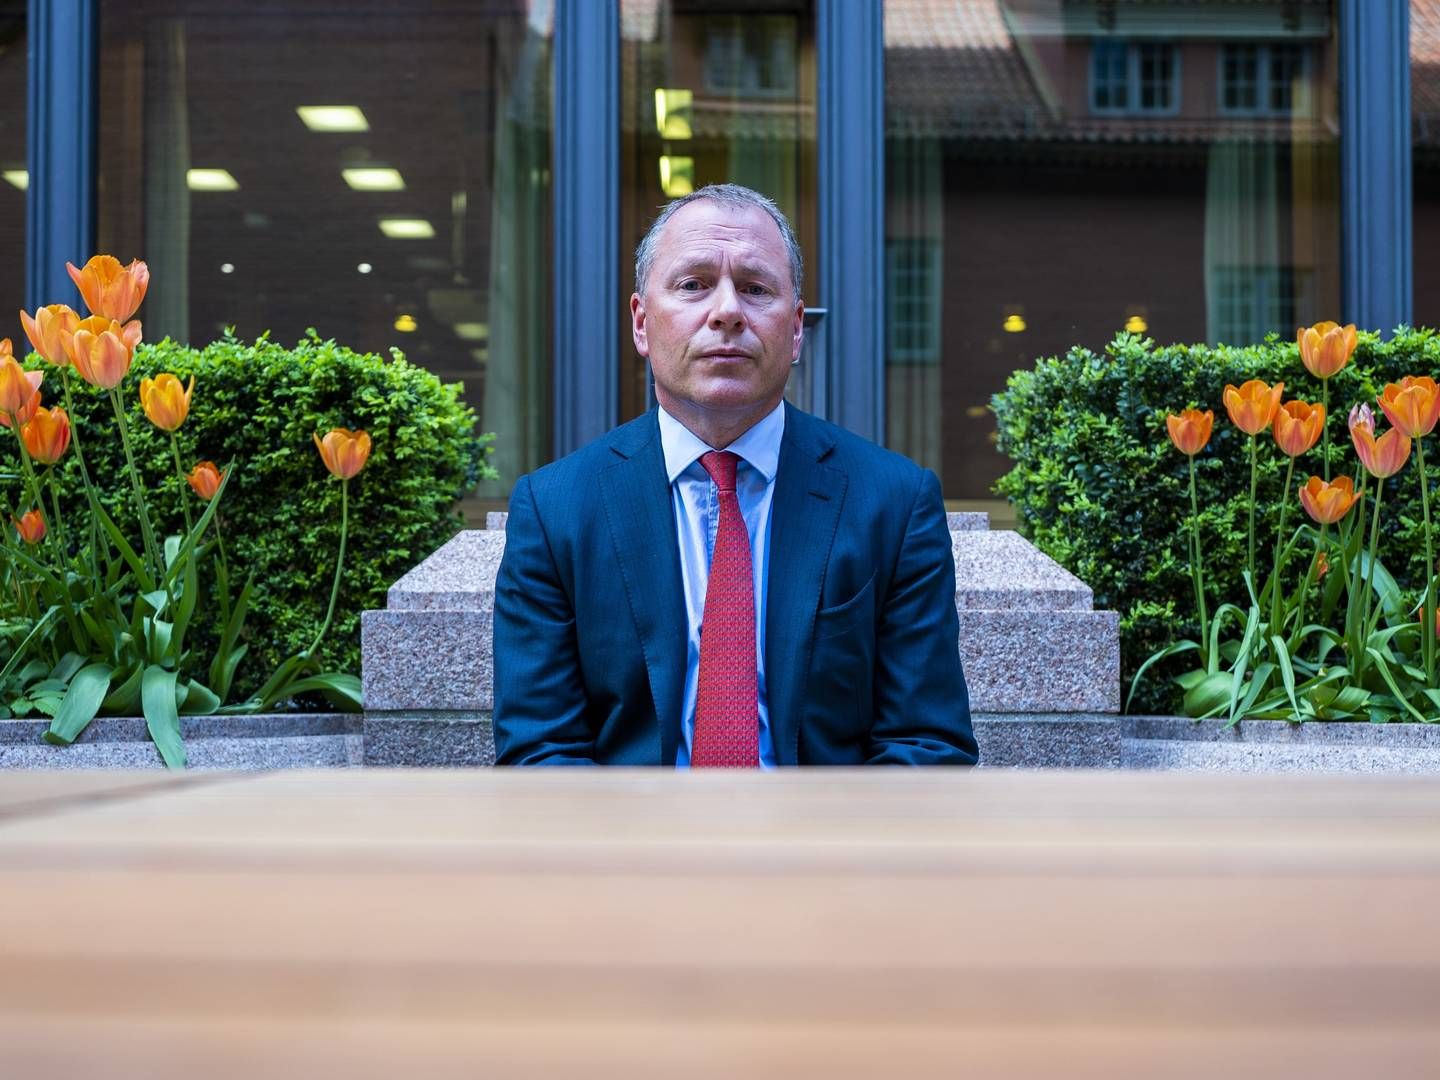 Påtroppende sjef i oljefondet Nicolai Tangen slipper inn som «ekstern gjest» i fondets kontorer fram til Stortinget har holdt sin høring om ansettelsen. | Foto: Håkon Mosvold Larsen/NTB Scanpix